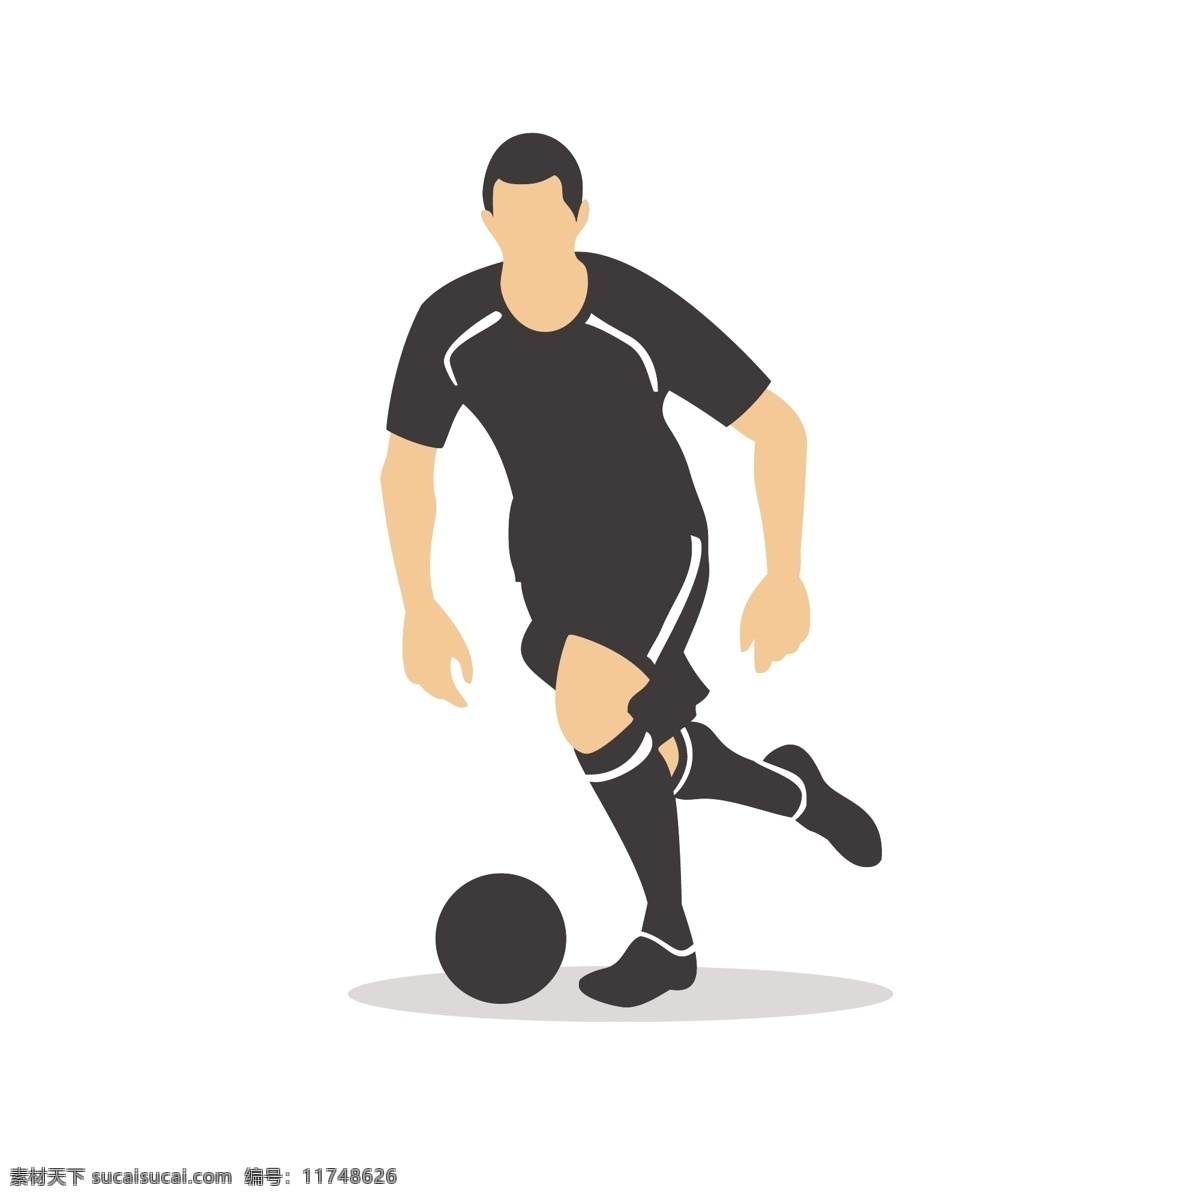 足球 运动员 矢量 足球运动 踢足球 姿势 踢球姿势 运动姿势 体育 体育运动 踢球动作 动作姿势